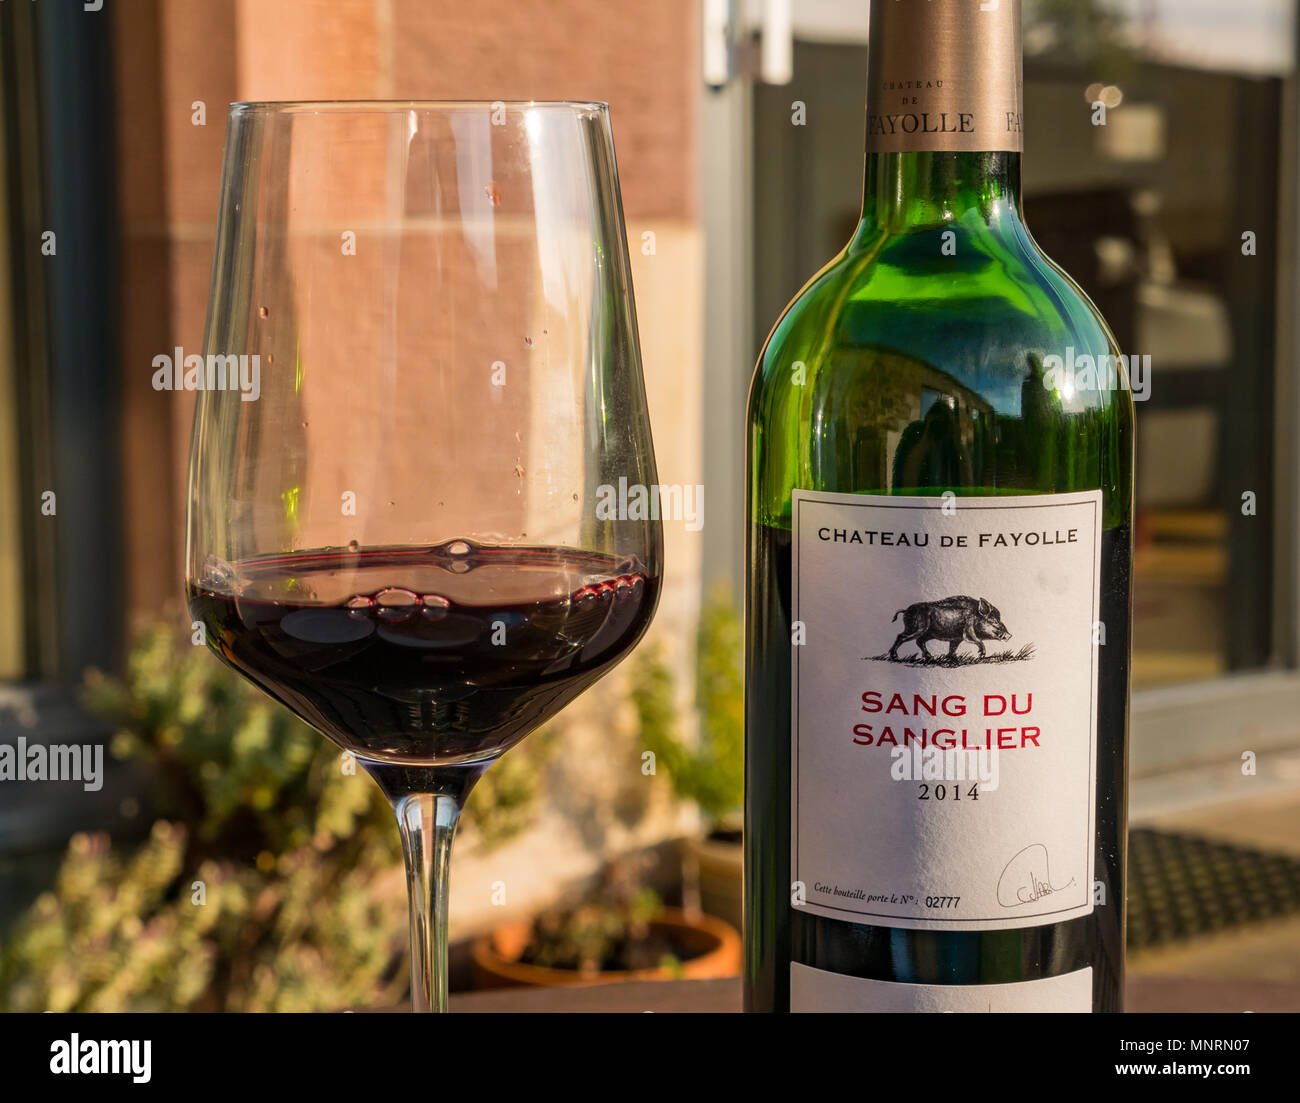 Eine Flasche französischen Rotwein, Sang du Sanglier 2014, Chateau de Périgueux, mit Wein im Glas auf Tisch im Freien in Abend sonnenbeschienenen Garten Stockfoto